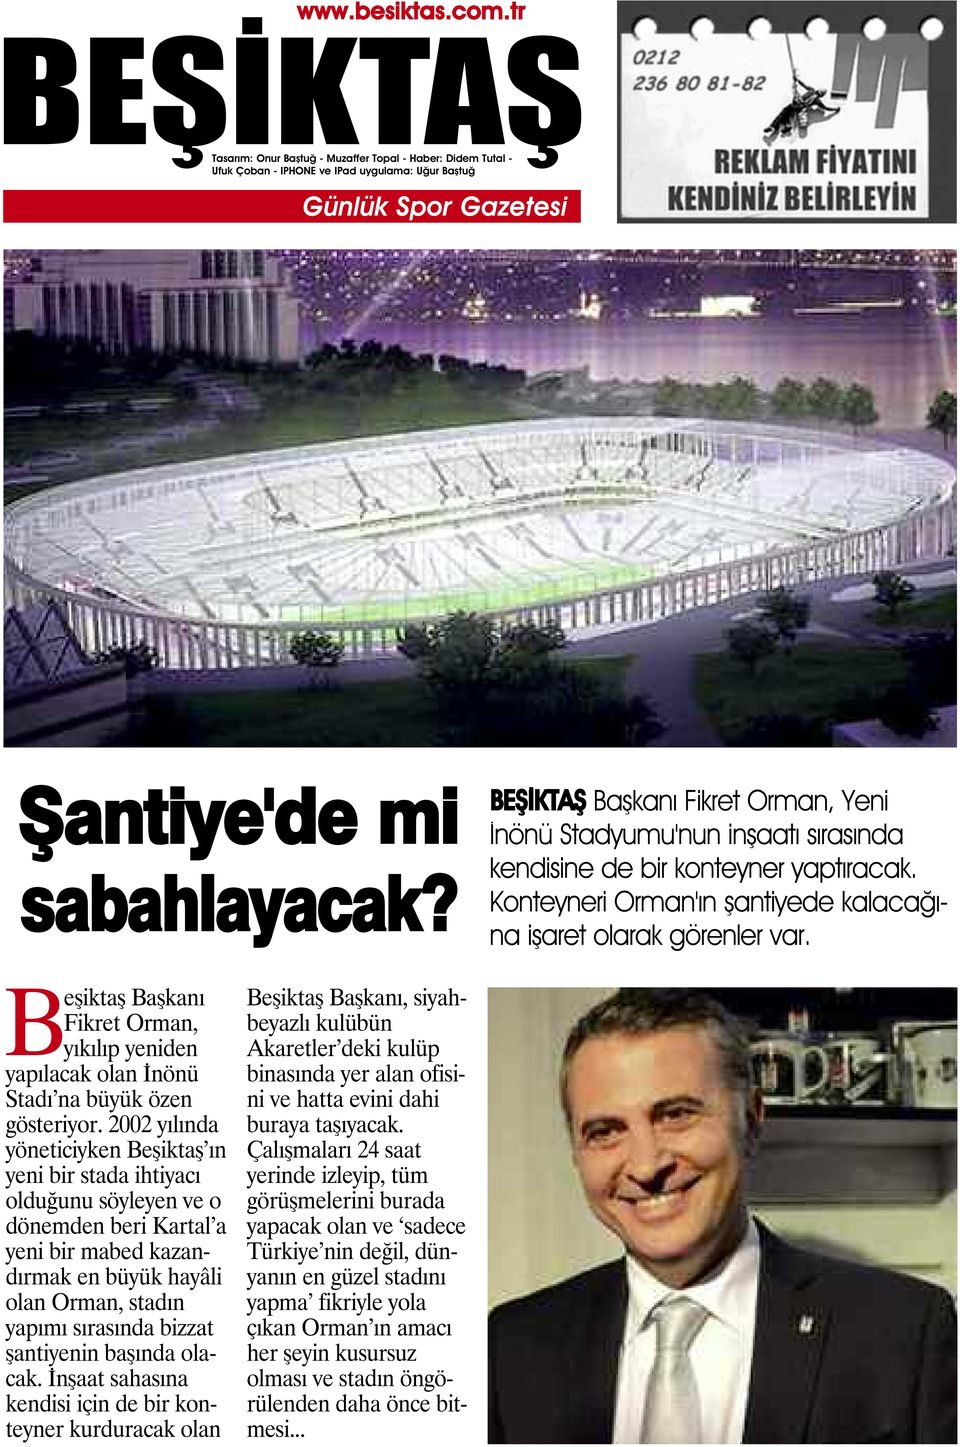 2002 yılında yöneticiyken Beşiktaş ın yeni bir stada ihtiyacı olduğunu söyleyen ve o dönemden beri Kartal a yeni bir mabed kazandırmak en büyük hayâli olan Orman, stadın yapımı sırasında bizzat